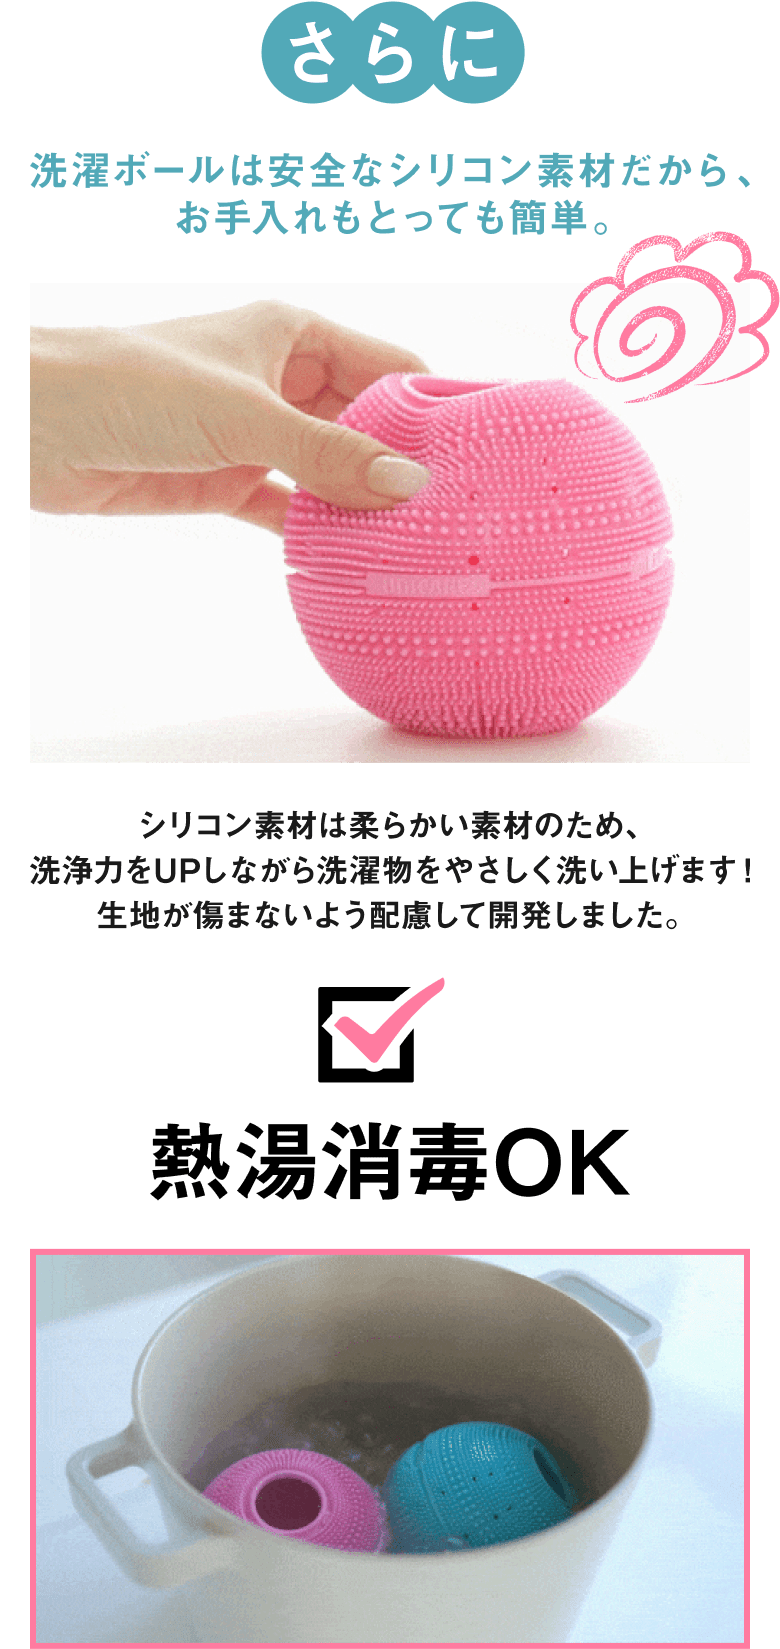 洗濯ボールは安全なシリコン素材だから、お手入れもとっても簡単。